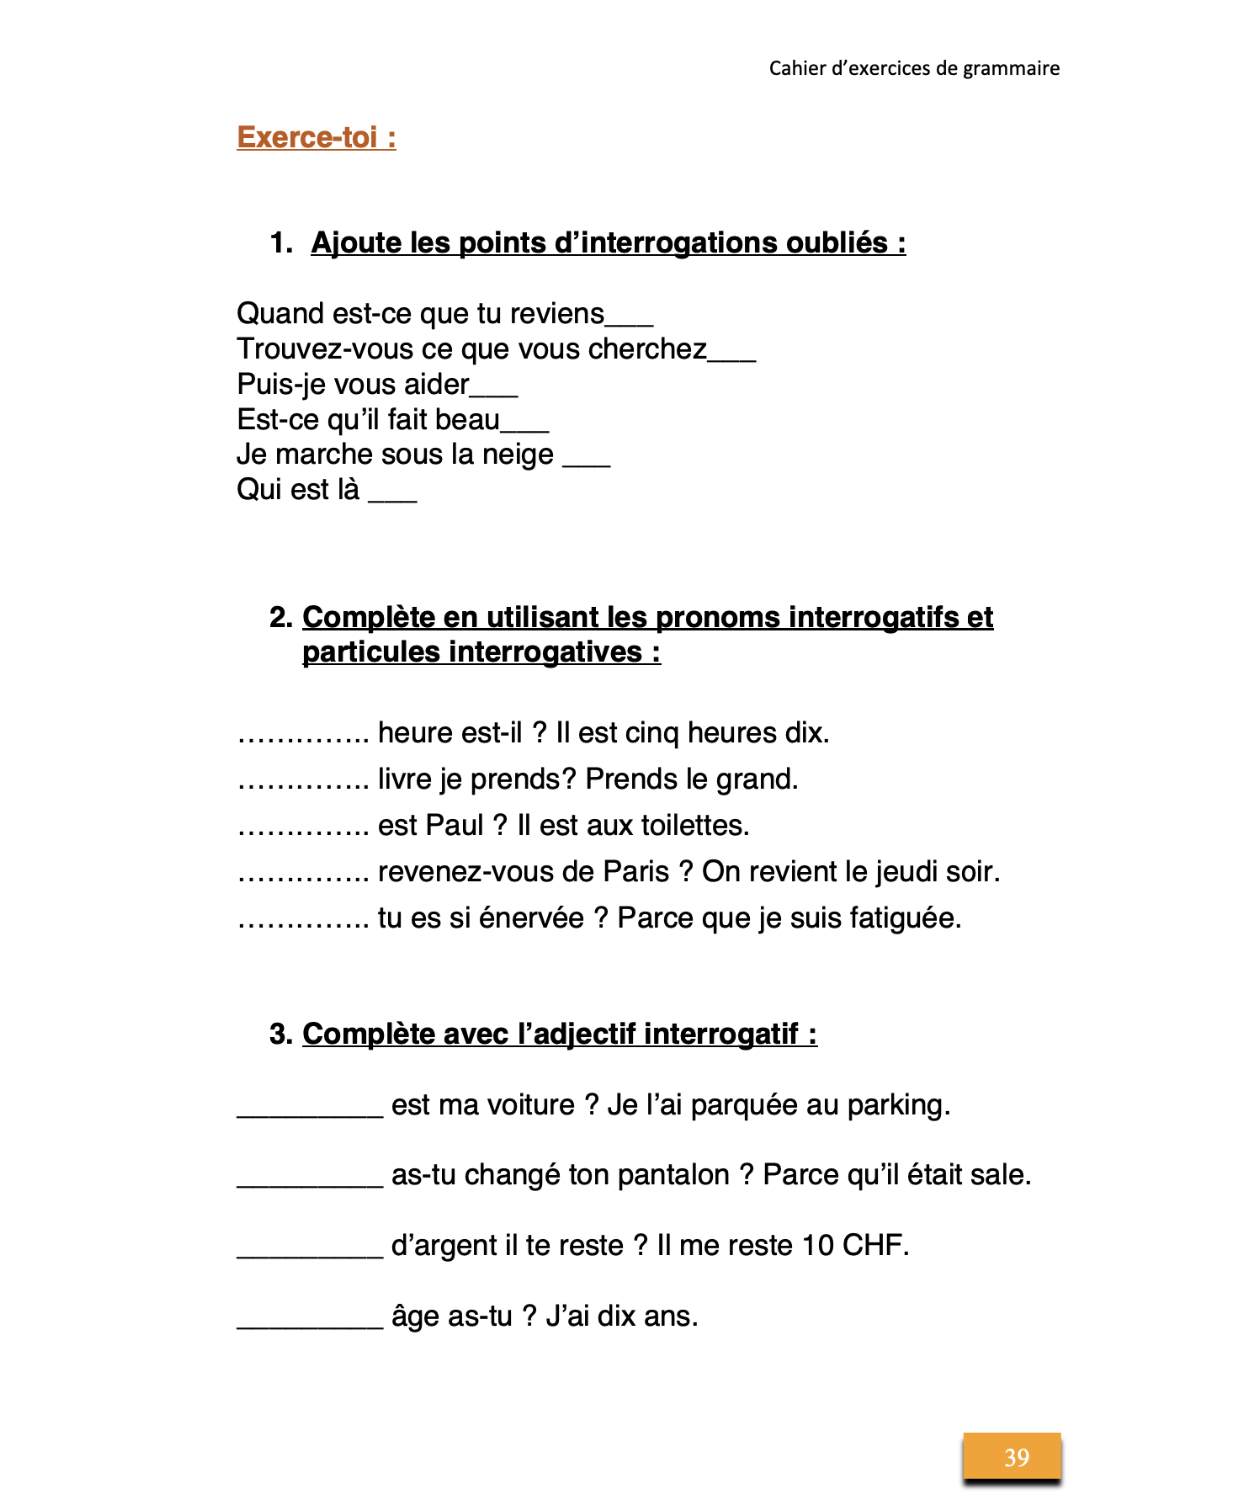 Méthode simplifiée en 3 volumes d'Elisabeth Ney - Extrait du volume 3 (page 39) : Cahier d'exercices de grammaire pour l'apprentissage et le renforcement du français, à l'usage des personnes allophones et francophones